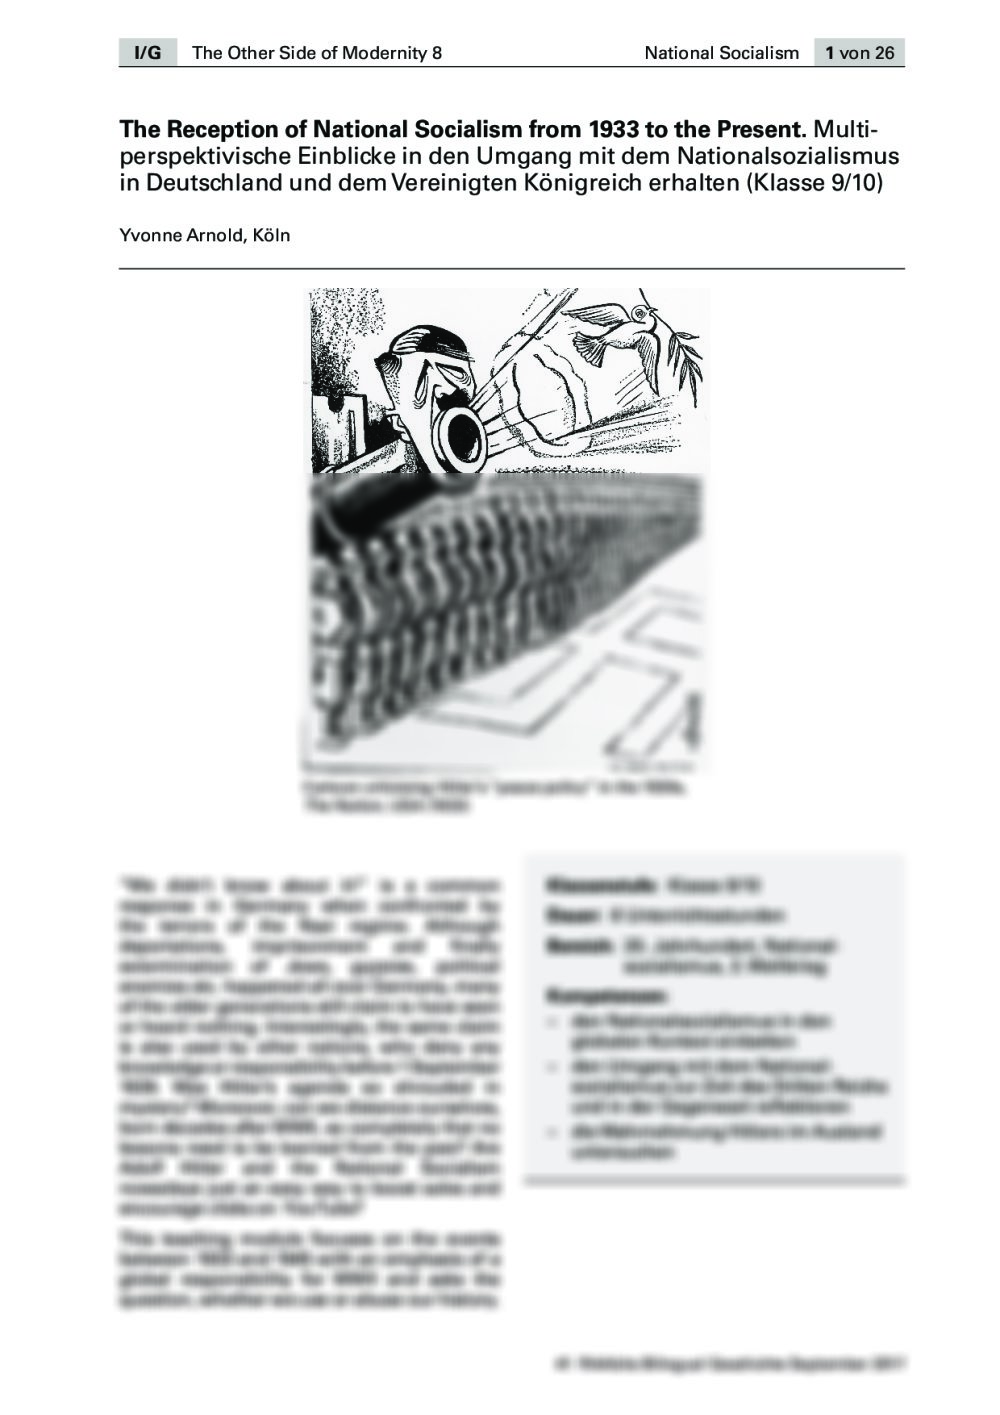 Multiperspektivische Einblicke in den Umgang mit dem Nationalsozialismus erhalten - Seite 1